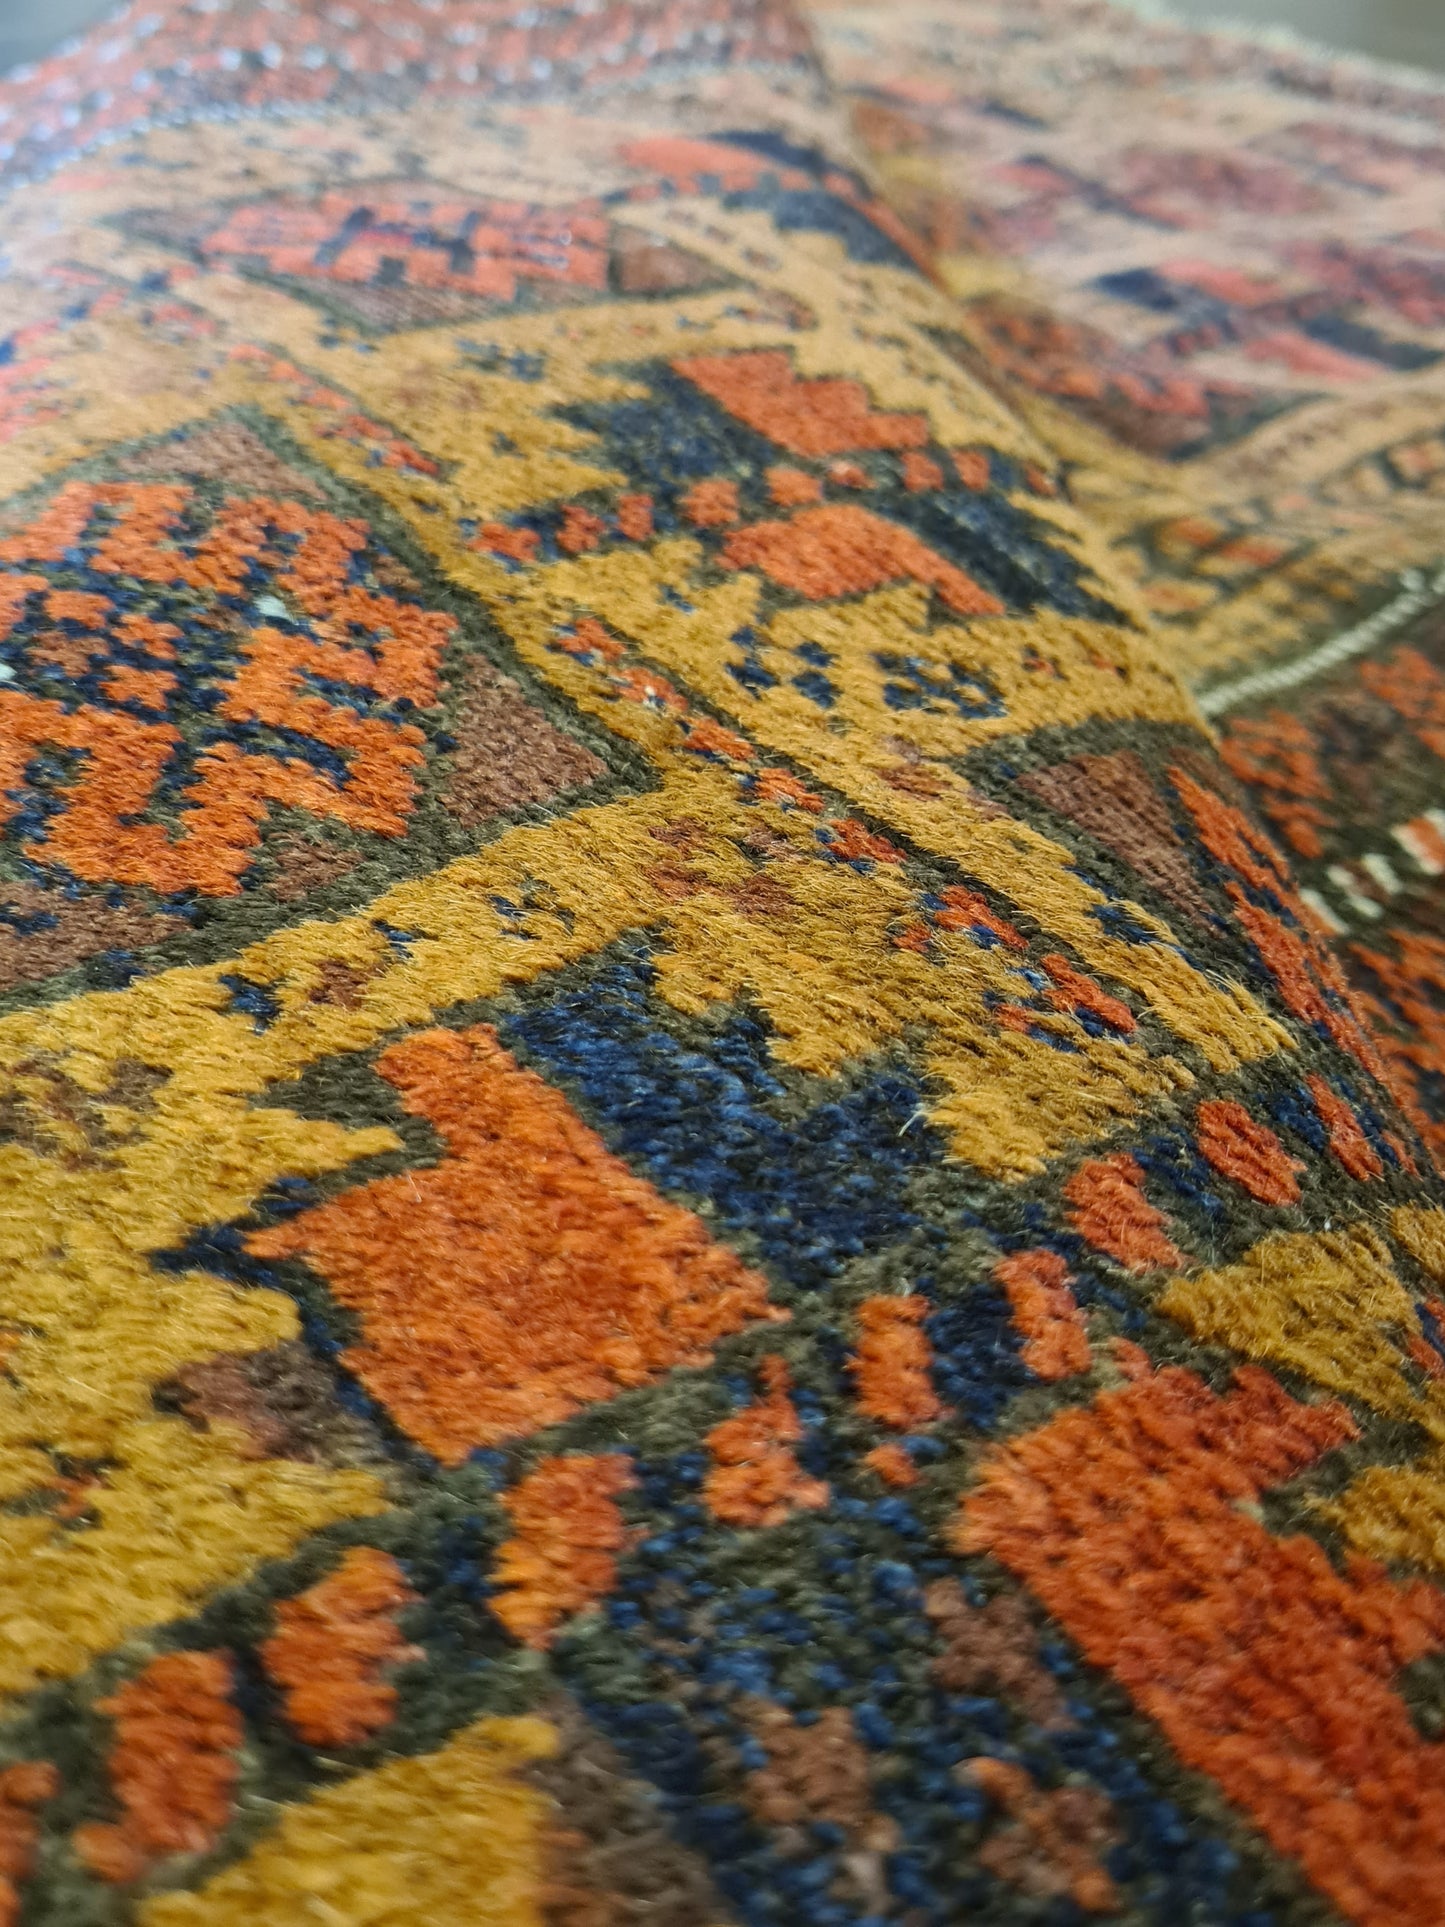 Antiker Belutsch Gebetsteppich – Ein Sammlerstück aus dem Orient 170x99cm